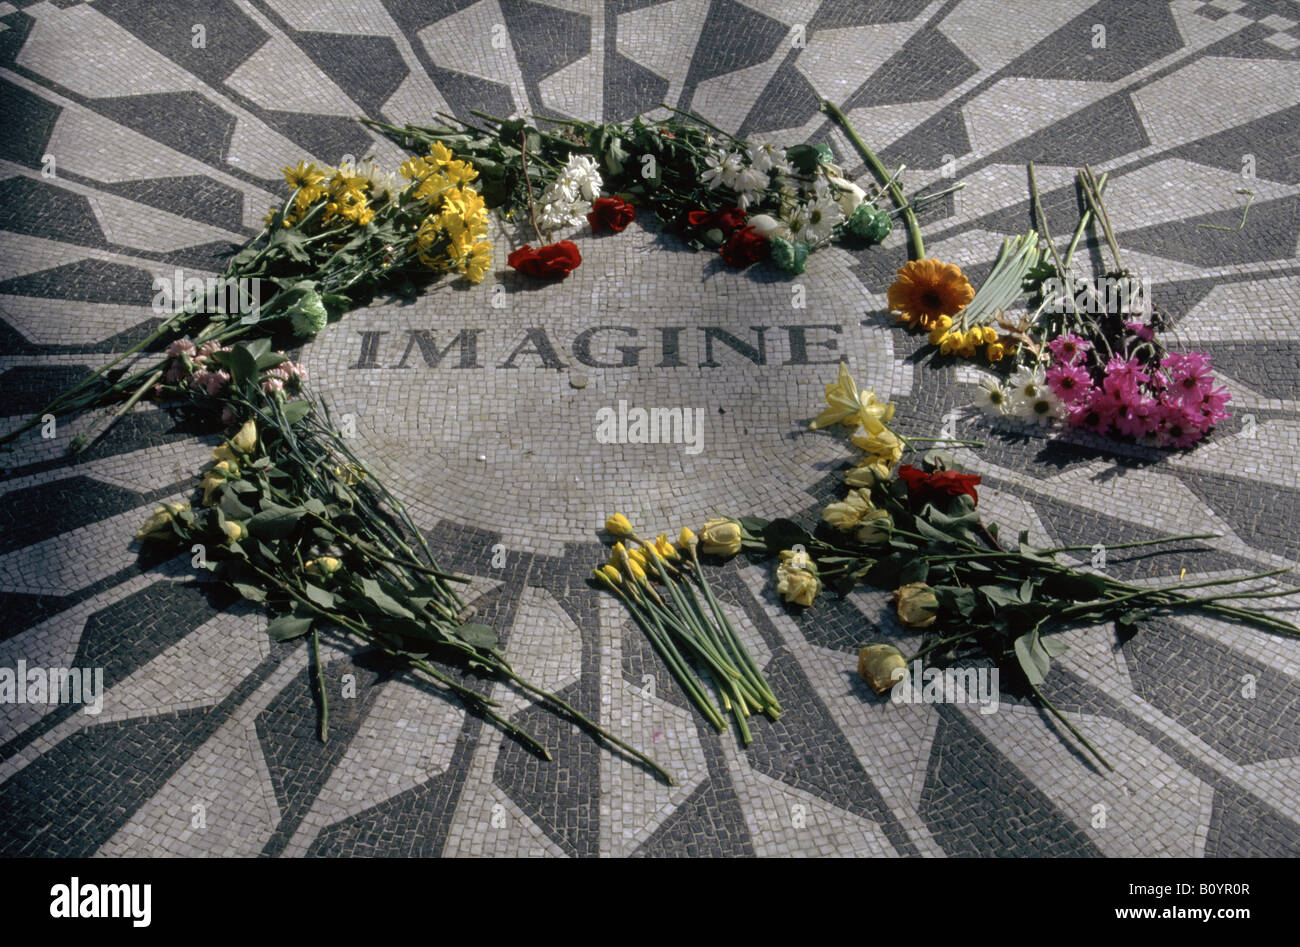 Central Park Imagine memorial to John Lennon Strawberry Fields    NEW YORK USA Stock Photo